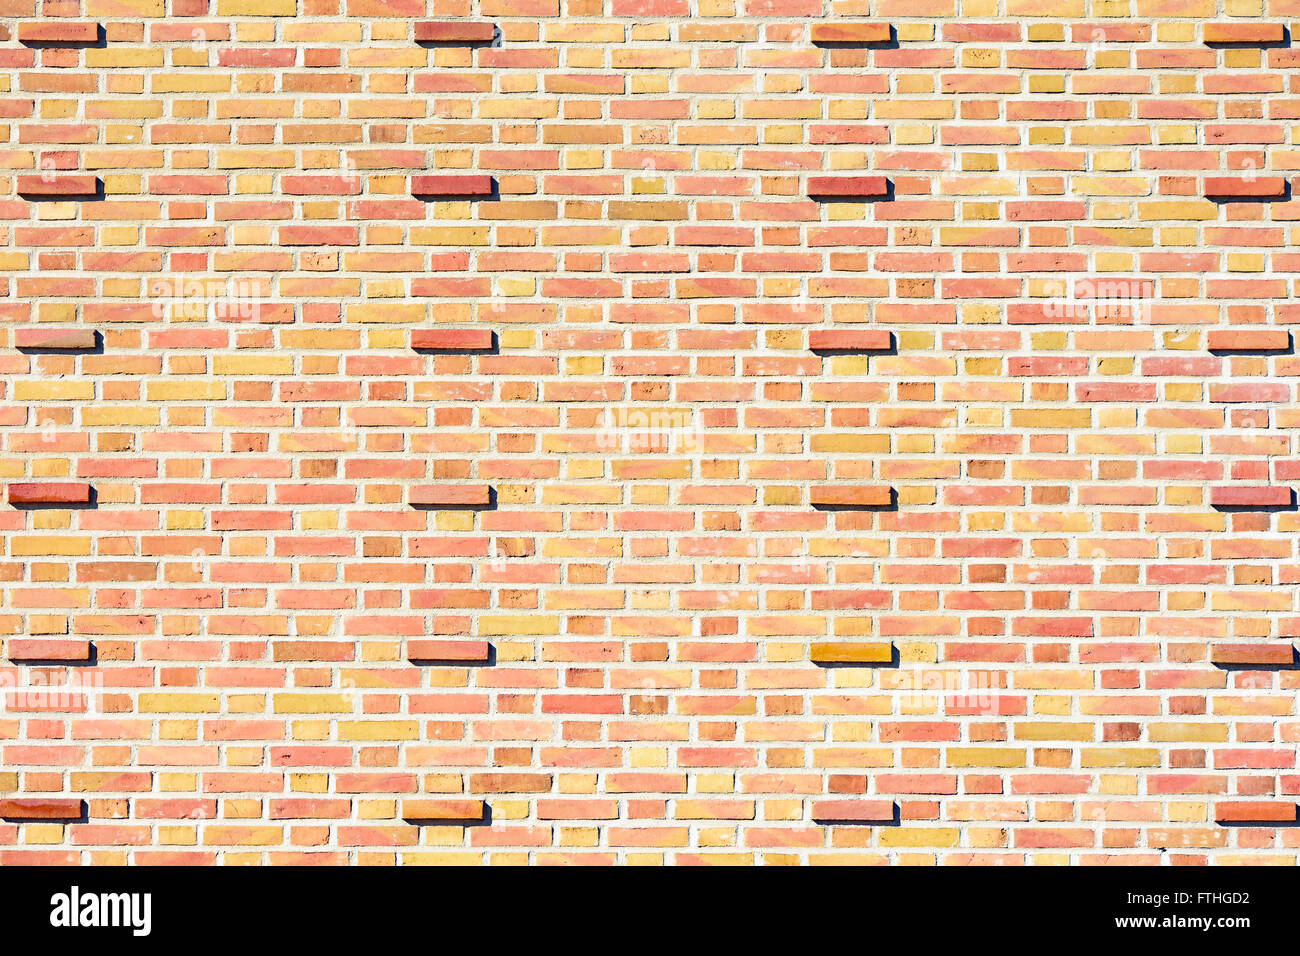 Jaune pâle et mur de brique rouge avec des briques en saillie à intervalles réguliers. Arrière-plan intéressant. Banque D'Images